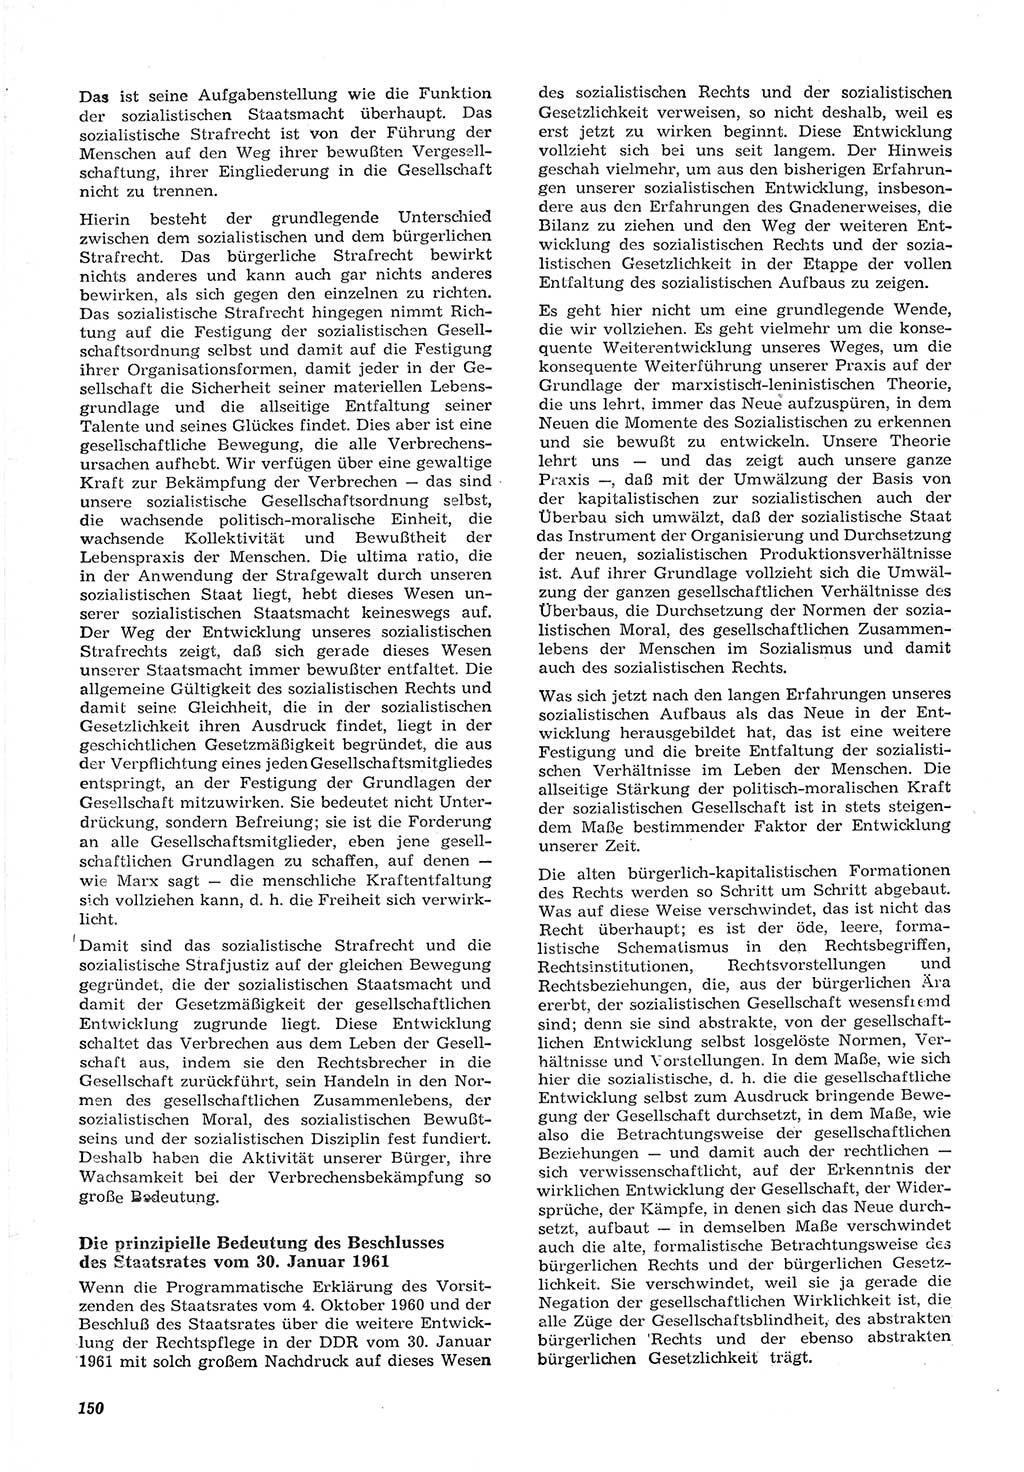 Neue Justiz (NJ), Zeitschrift für Recht und Rechtswissenschaft [Deutsche Demokratische Republik (DDR)], 15. Jahrgang 1961, Seite 150 (NJ DDR 1961, S. 150)